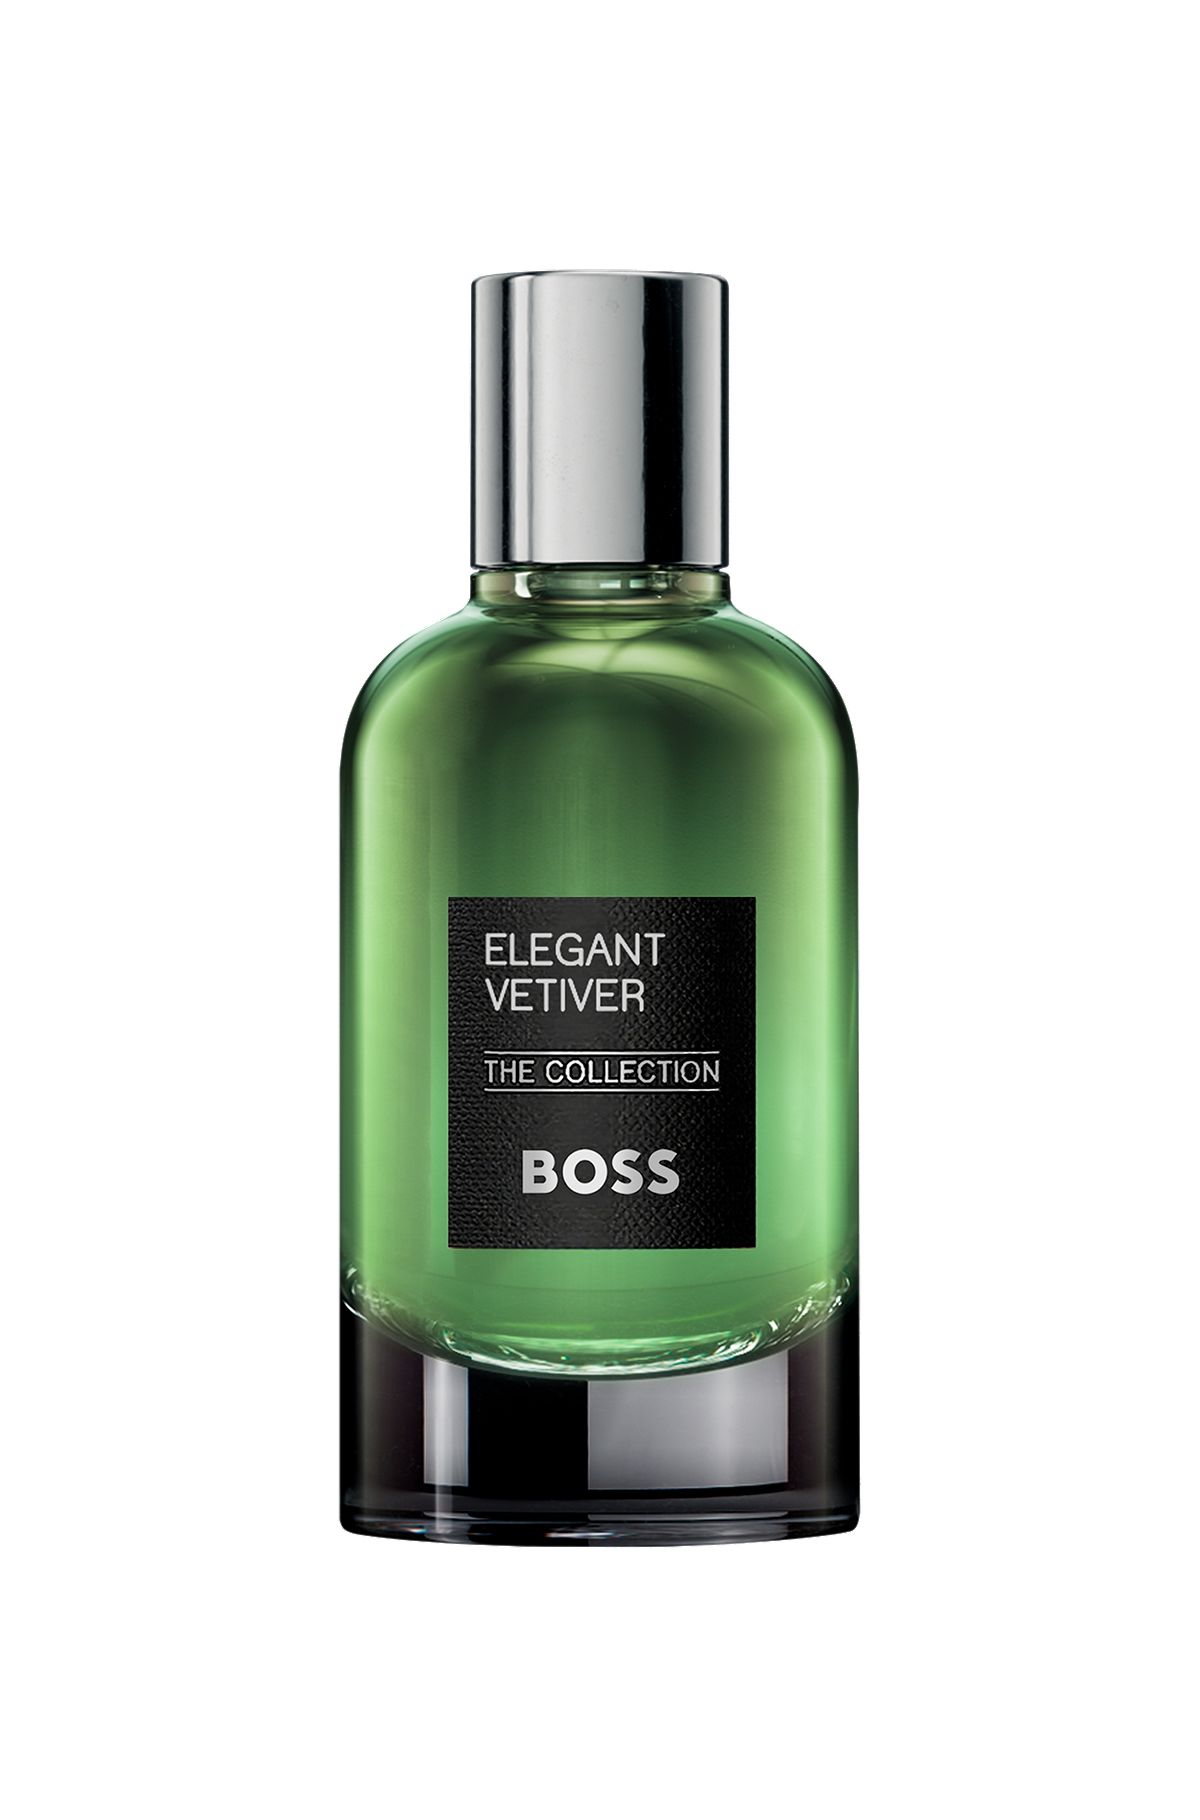 Eau de parfum BOSS The Collection Elegant Vetiver, 100 ml, Assorted-Pre-Pack